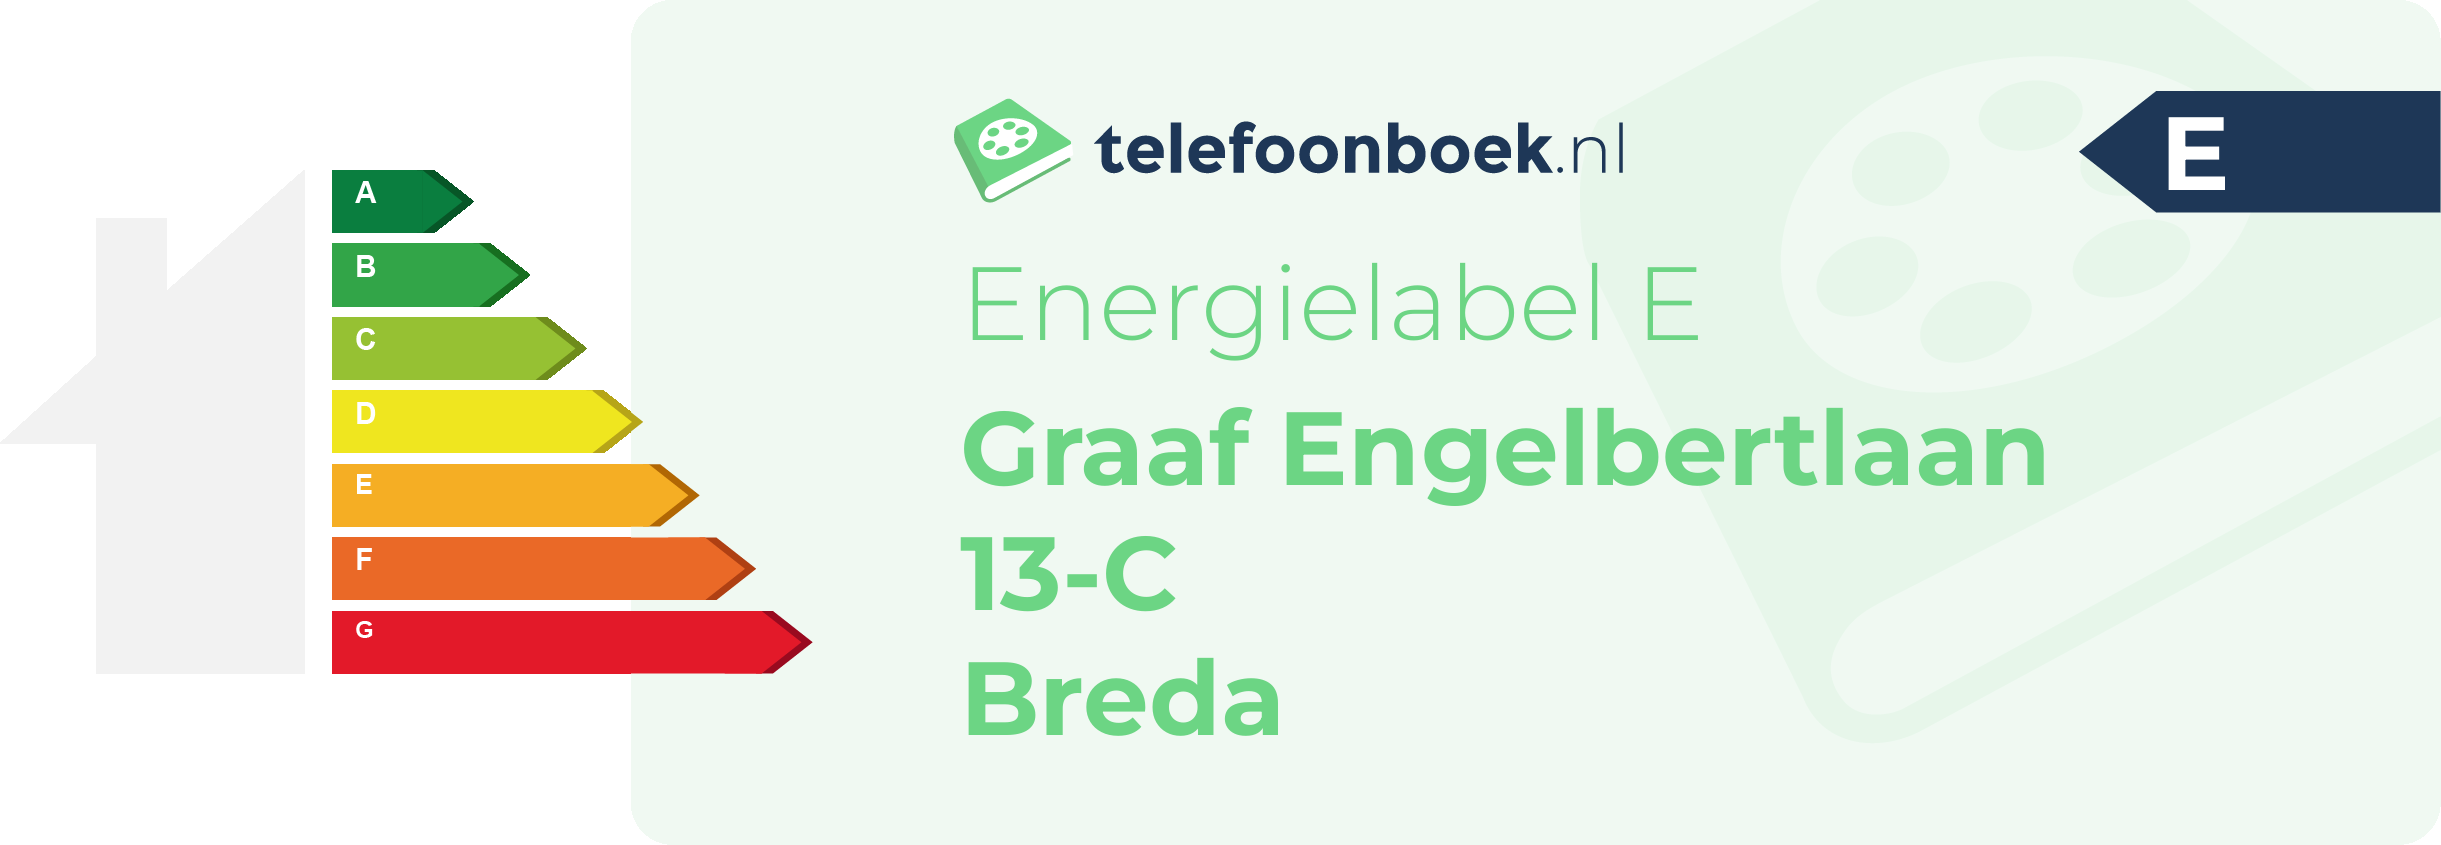 Energielabel Graaf Engelbertlaan 13-C Breda